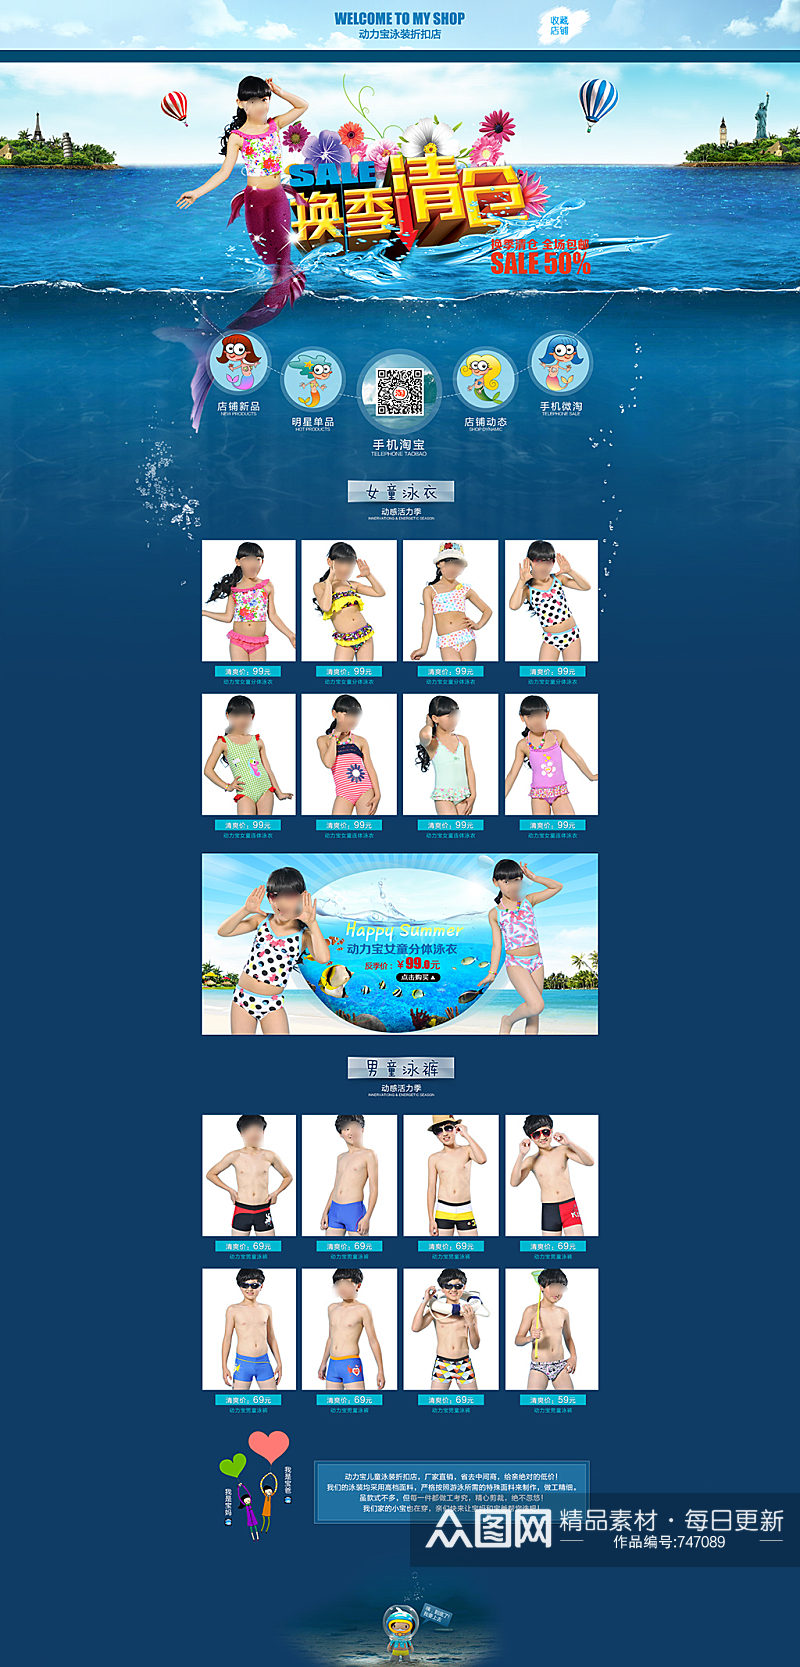 夏季女装泳衣促销活动首页素材